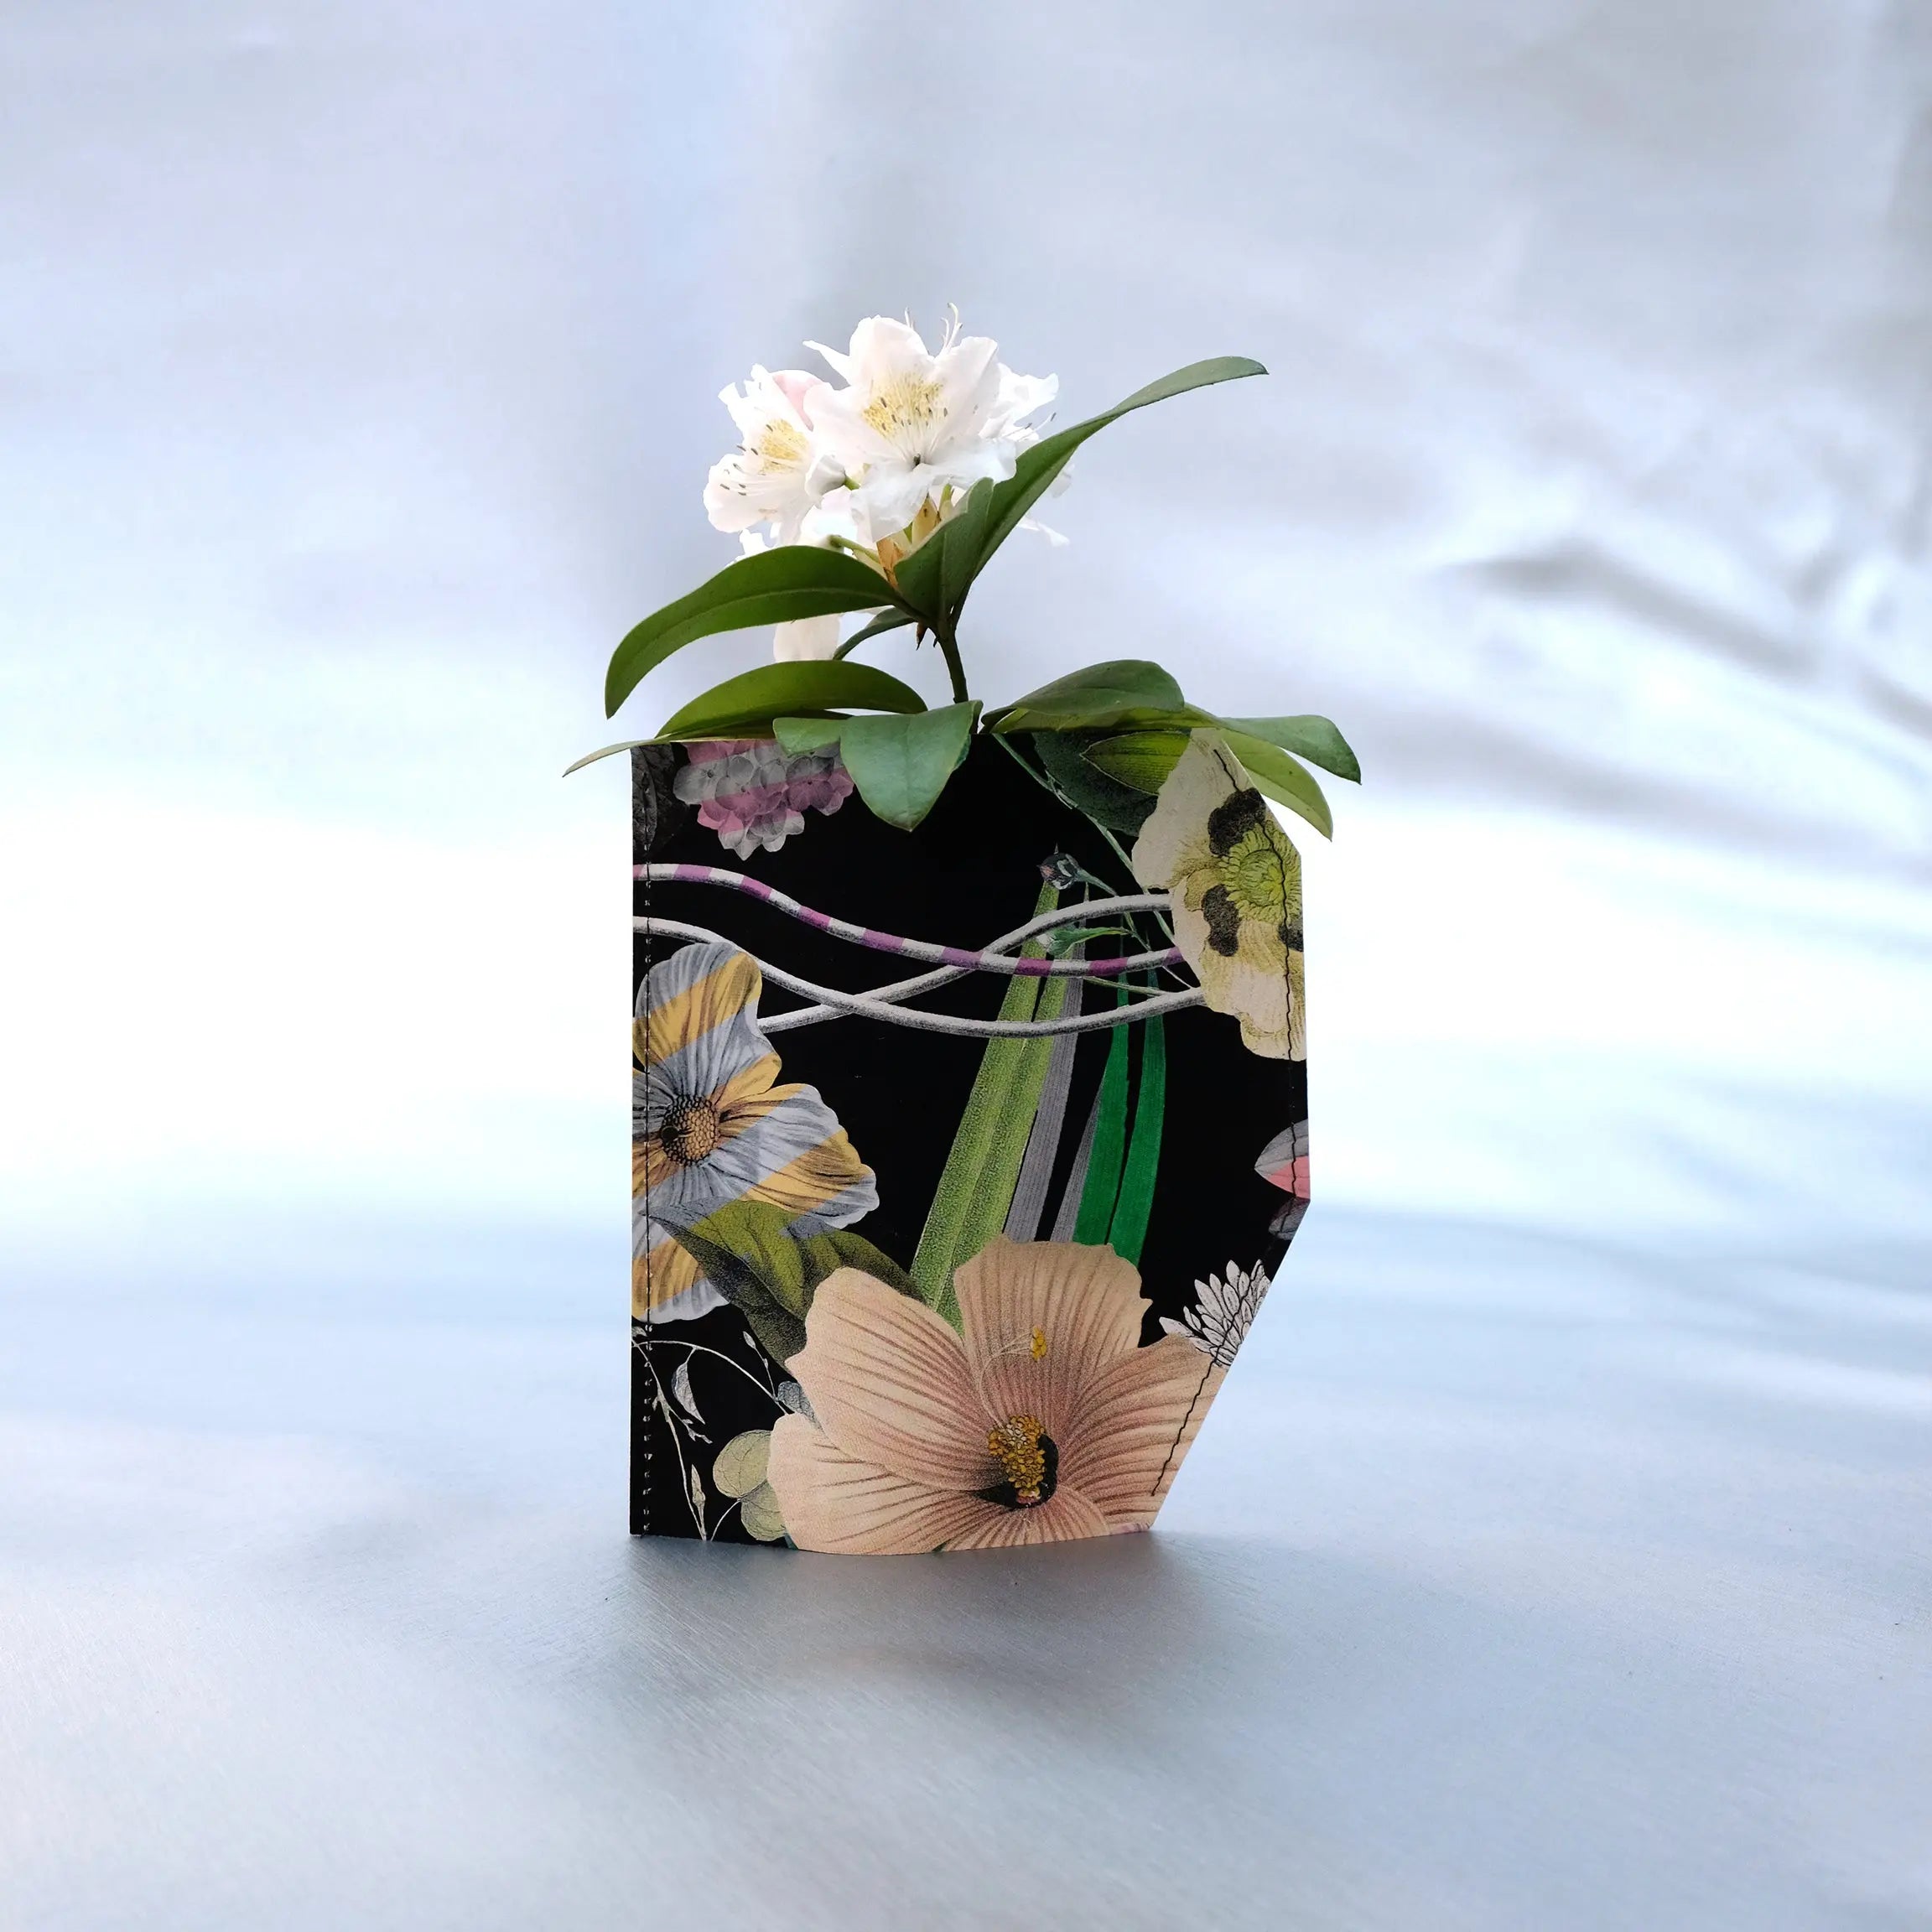 die Raumtapeterie: Vase aus Tapete - Flowers die Raumtapeterie